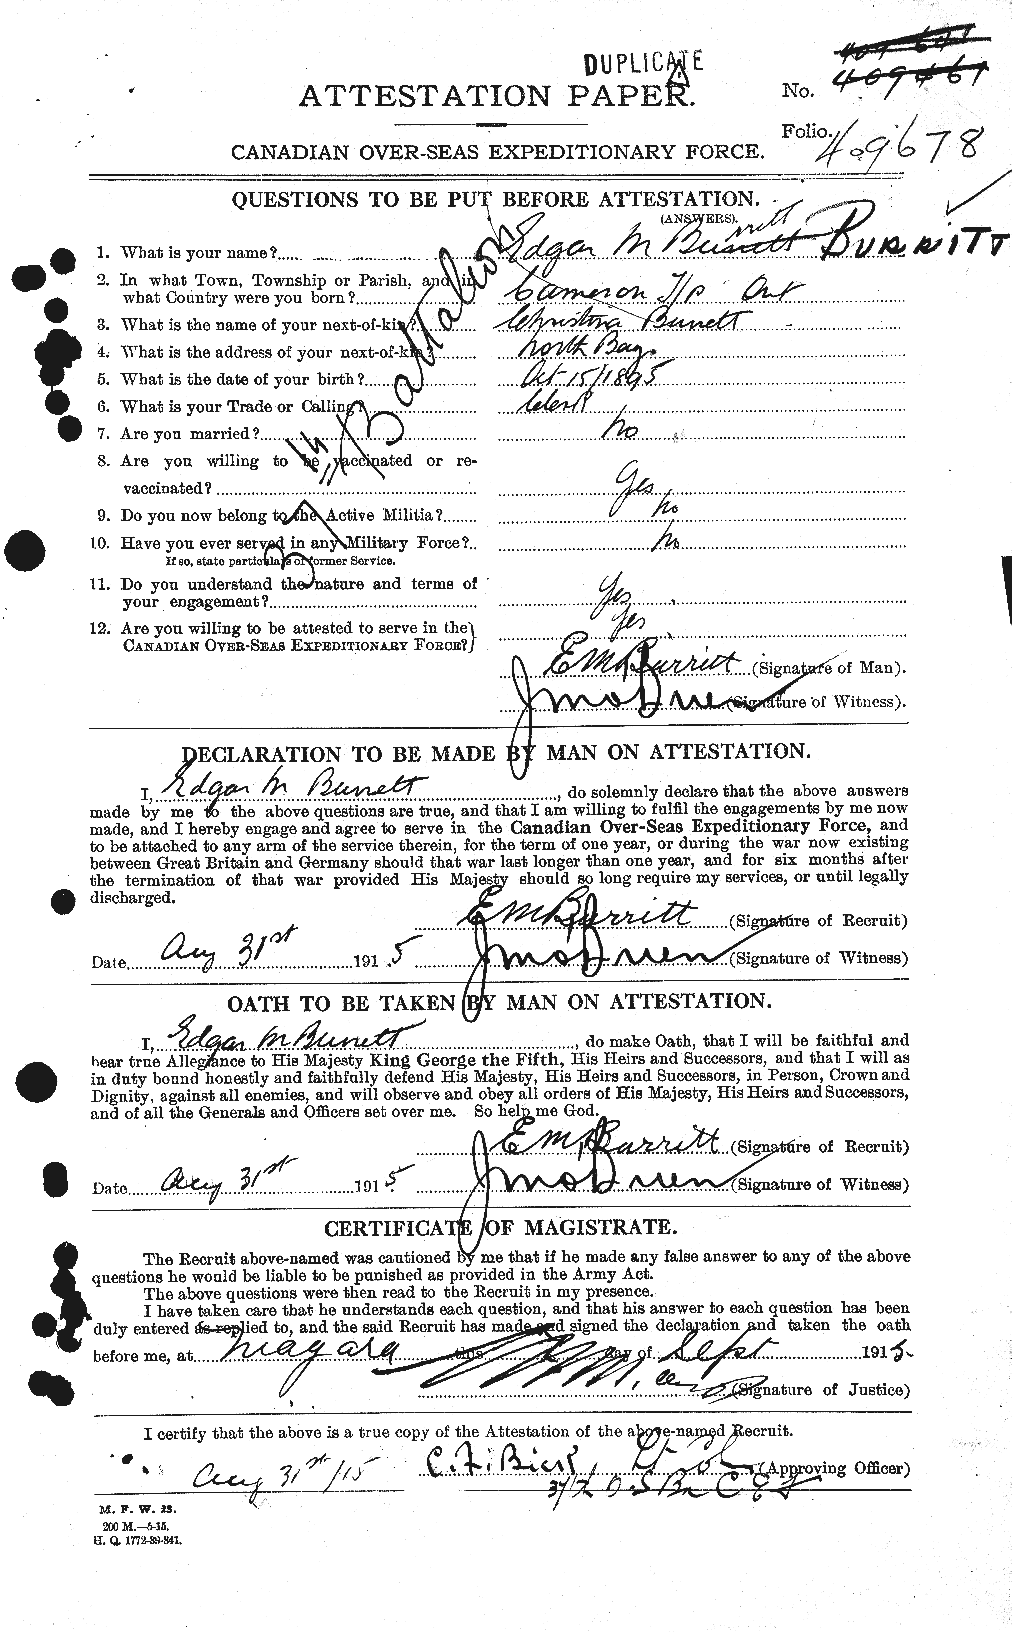 Dossiers du Personnel de la Première Guerre mondiale - CEC 274703a